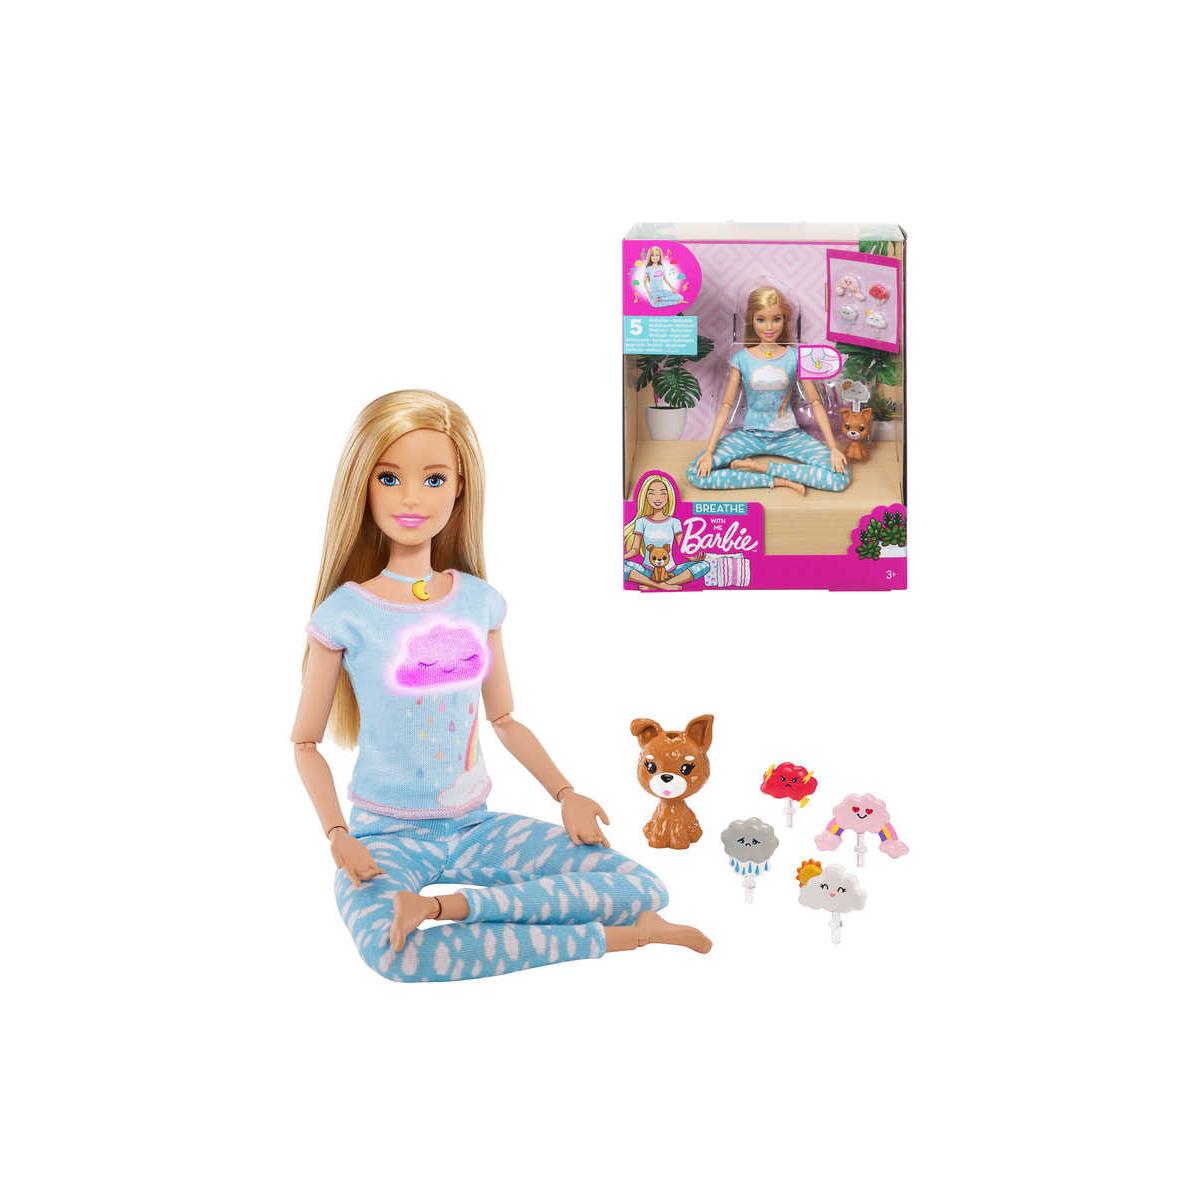 MATTEL BRB Barbie wellness a meditace set panenka s pejskem a doplňky